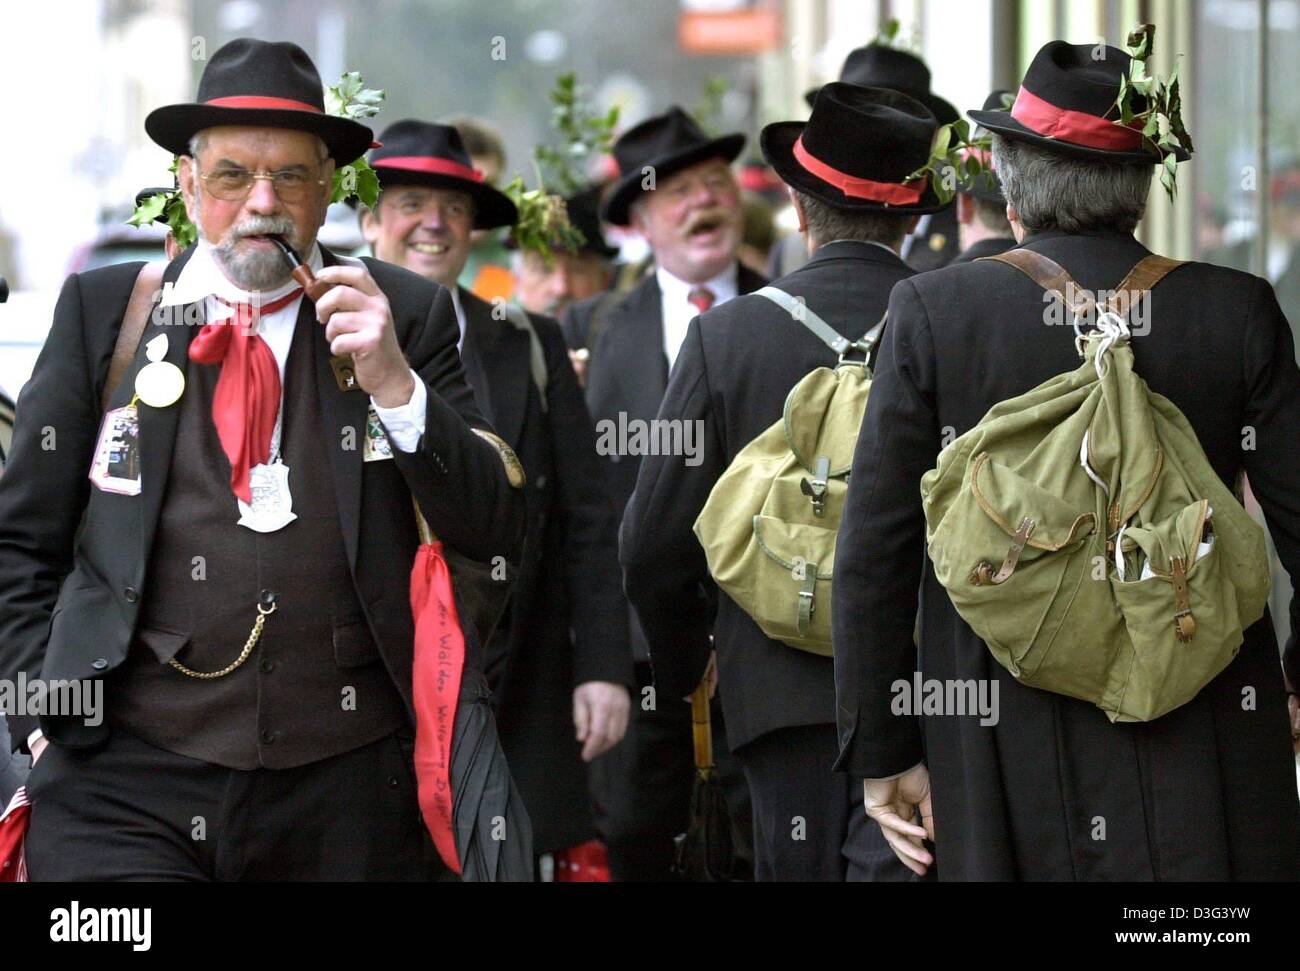 Dpa) - identisch gekleidete Männer in traditionellen Holzfäller Kostüm zu  Fuß die Straßen von Bad Säckingen, Deutschland, 13. Februar 2003. Die  Männer ziehen rote Krawatten, schwarze Hüte mit Holly, schwarzen Suitcoats  und